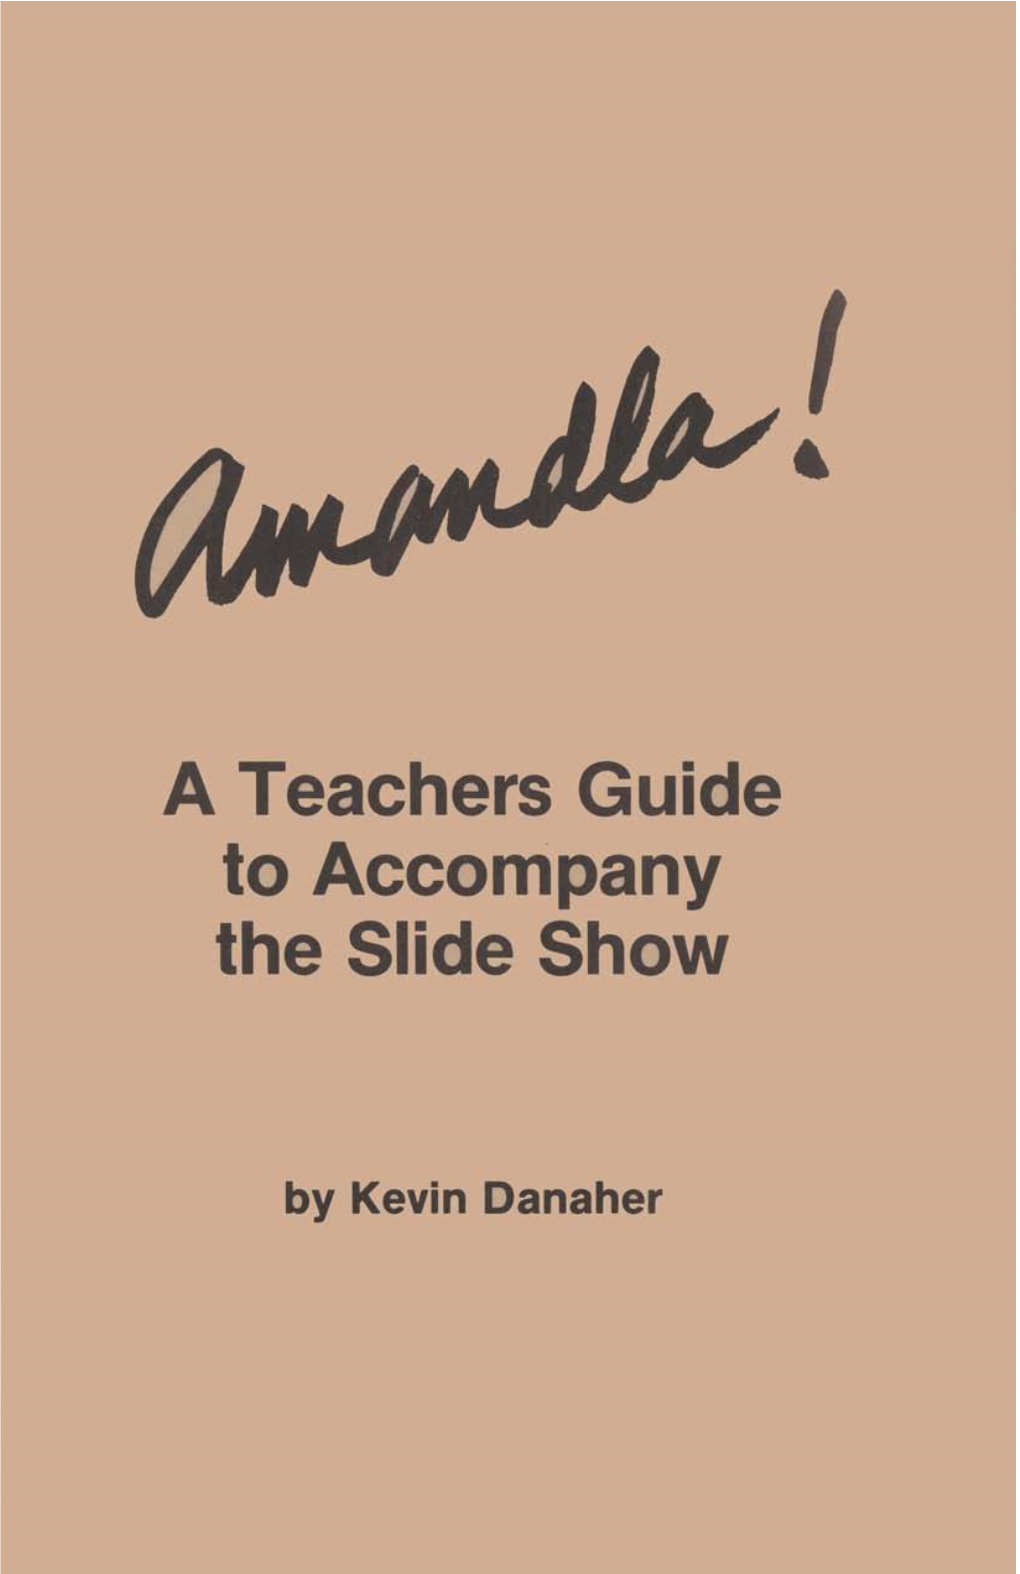 A Teachers Guide to Accompany the Slide Show